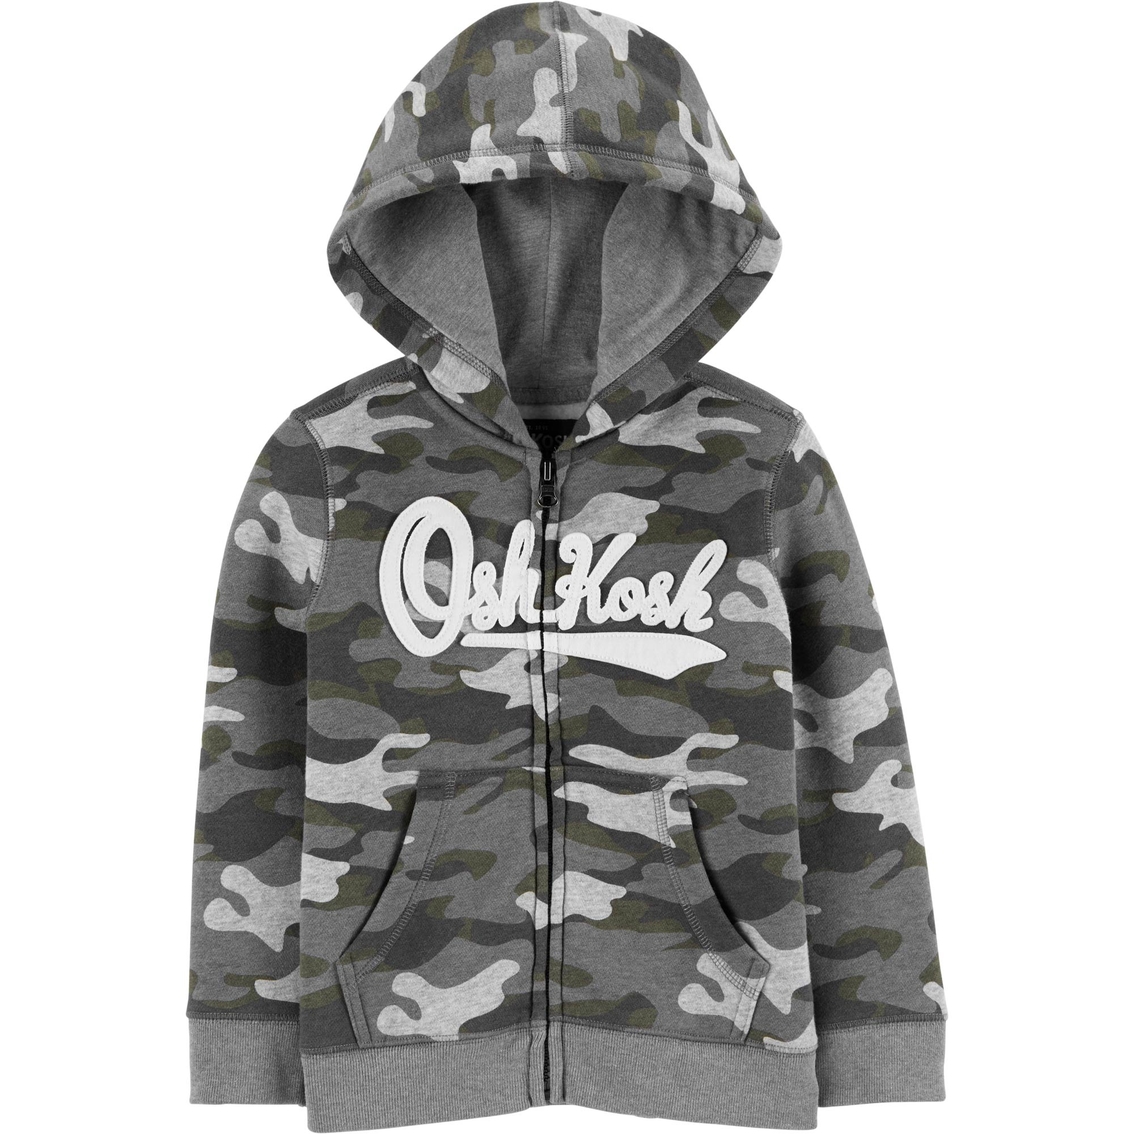 OshKosh BGosh Boys Zip-up Fleece Cozie Jacket